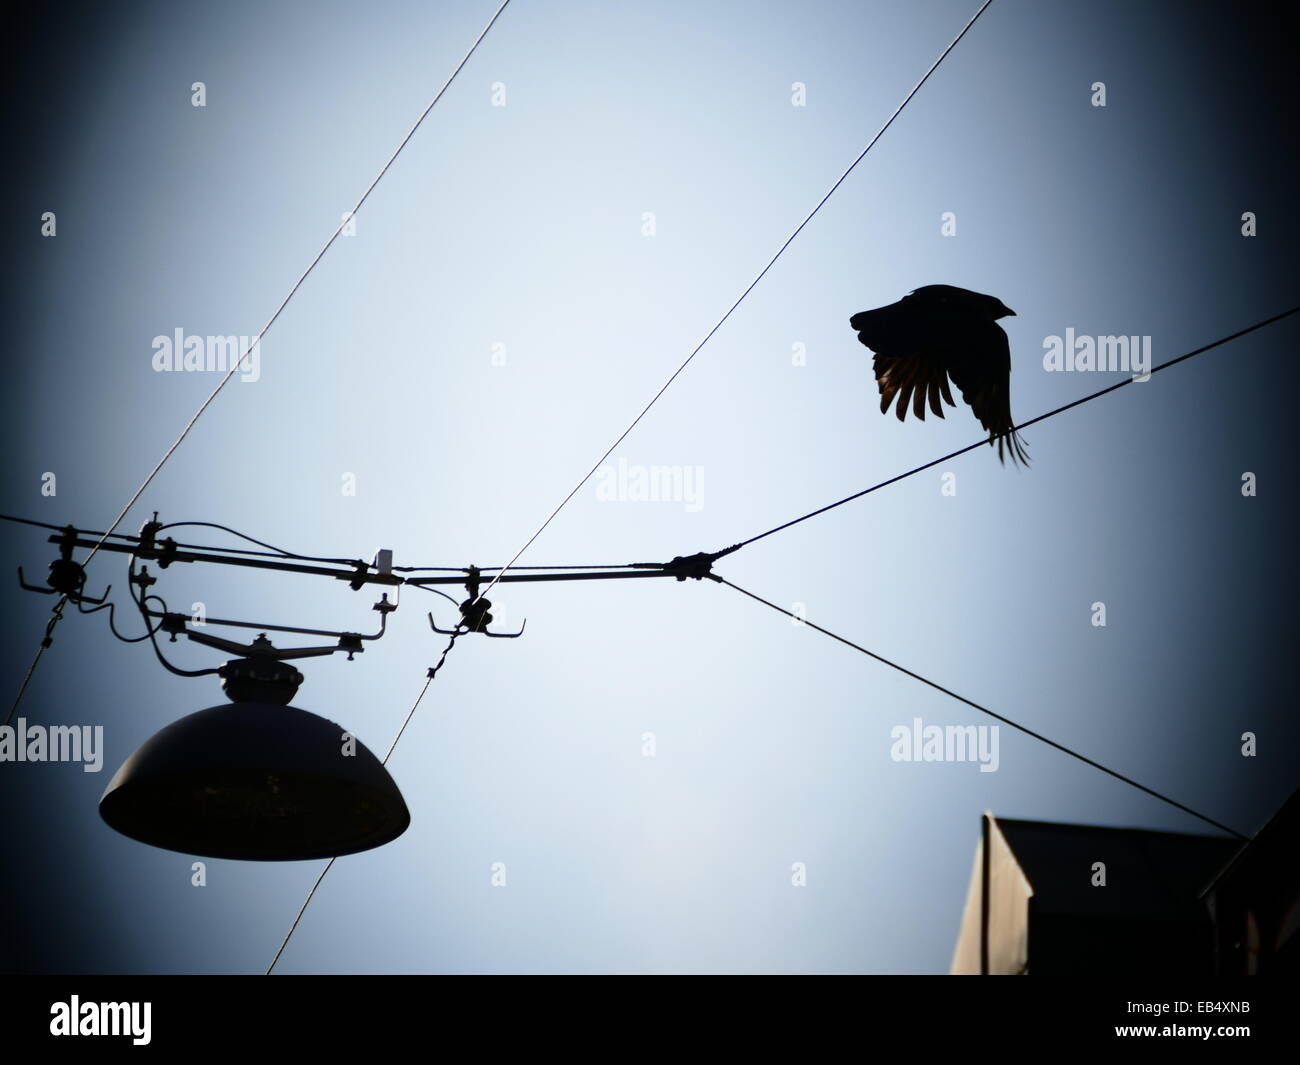 Crow cuervo negro pájaro volando lejos de la línea de cable eléctrico Foto de stock